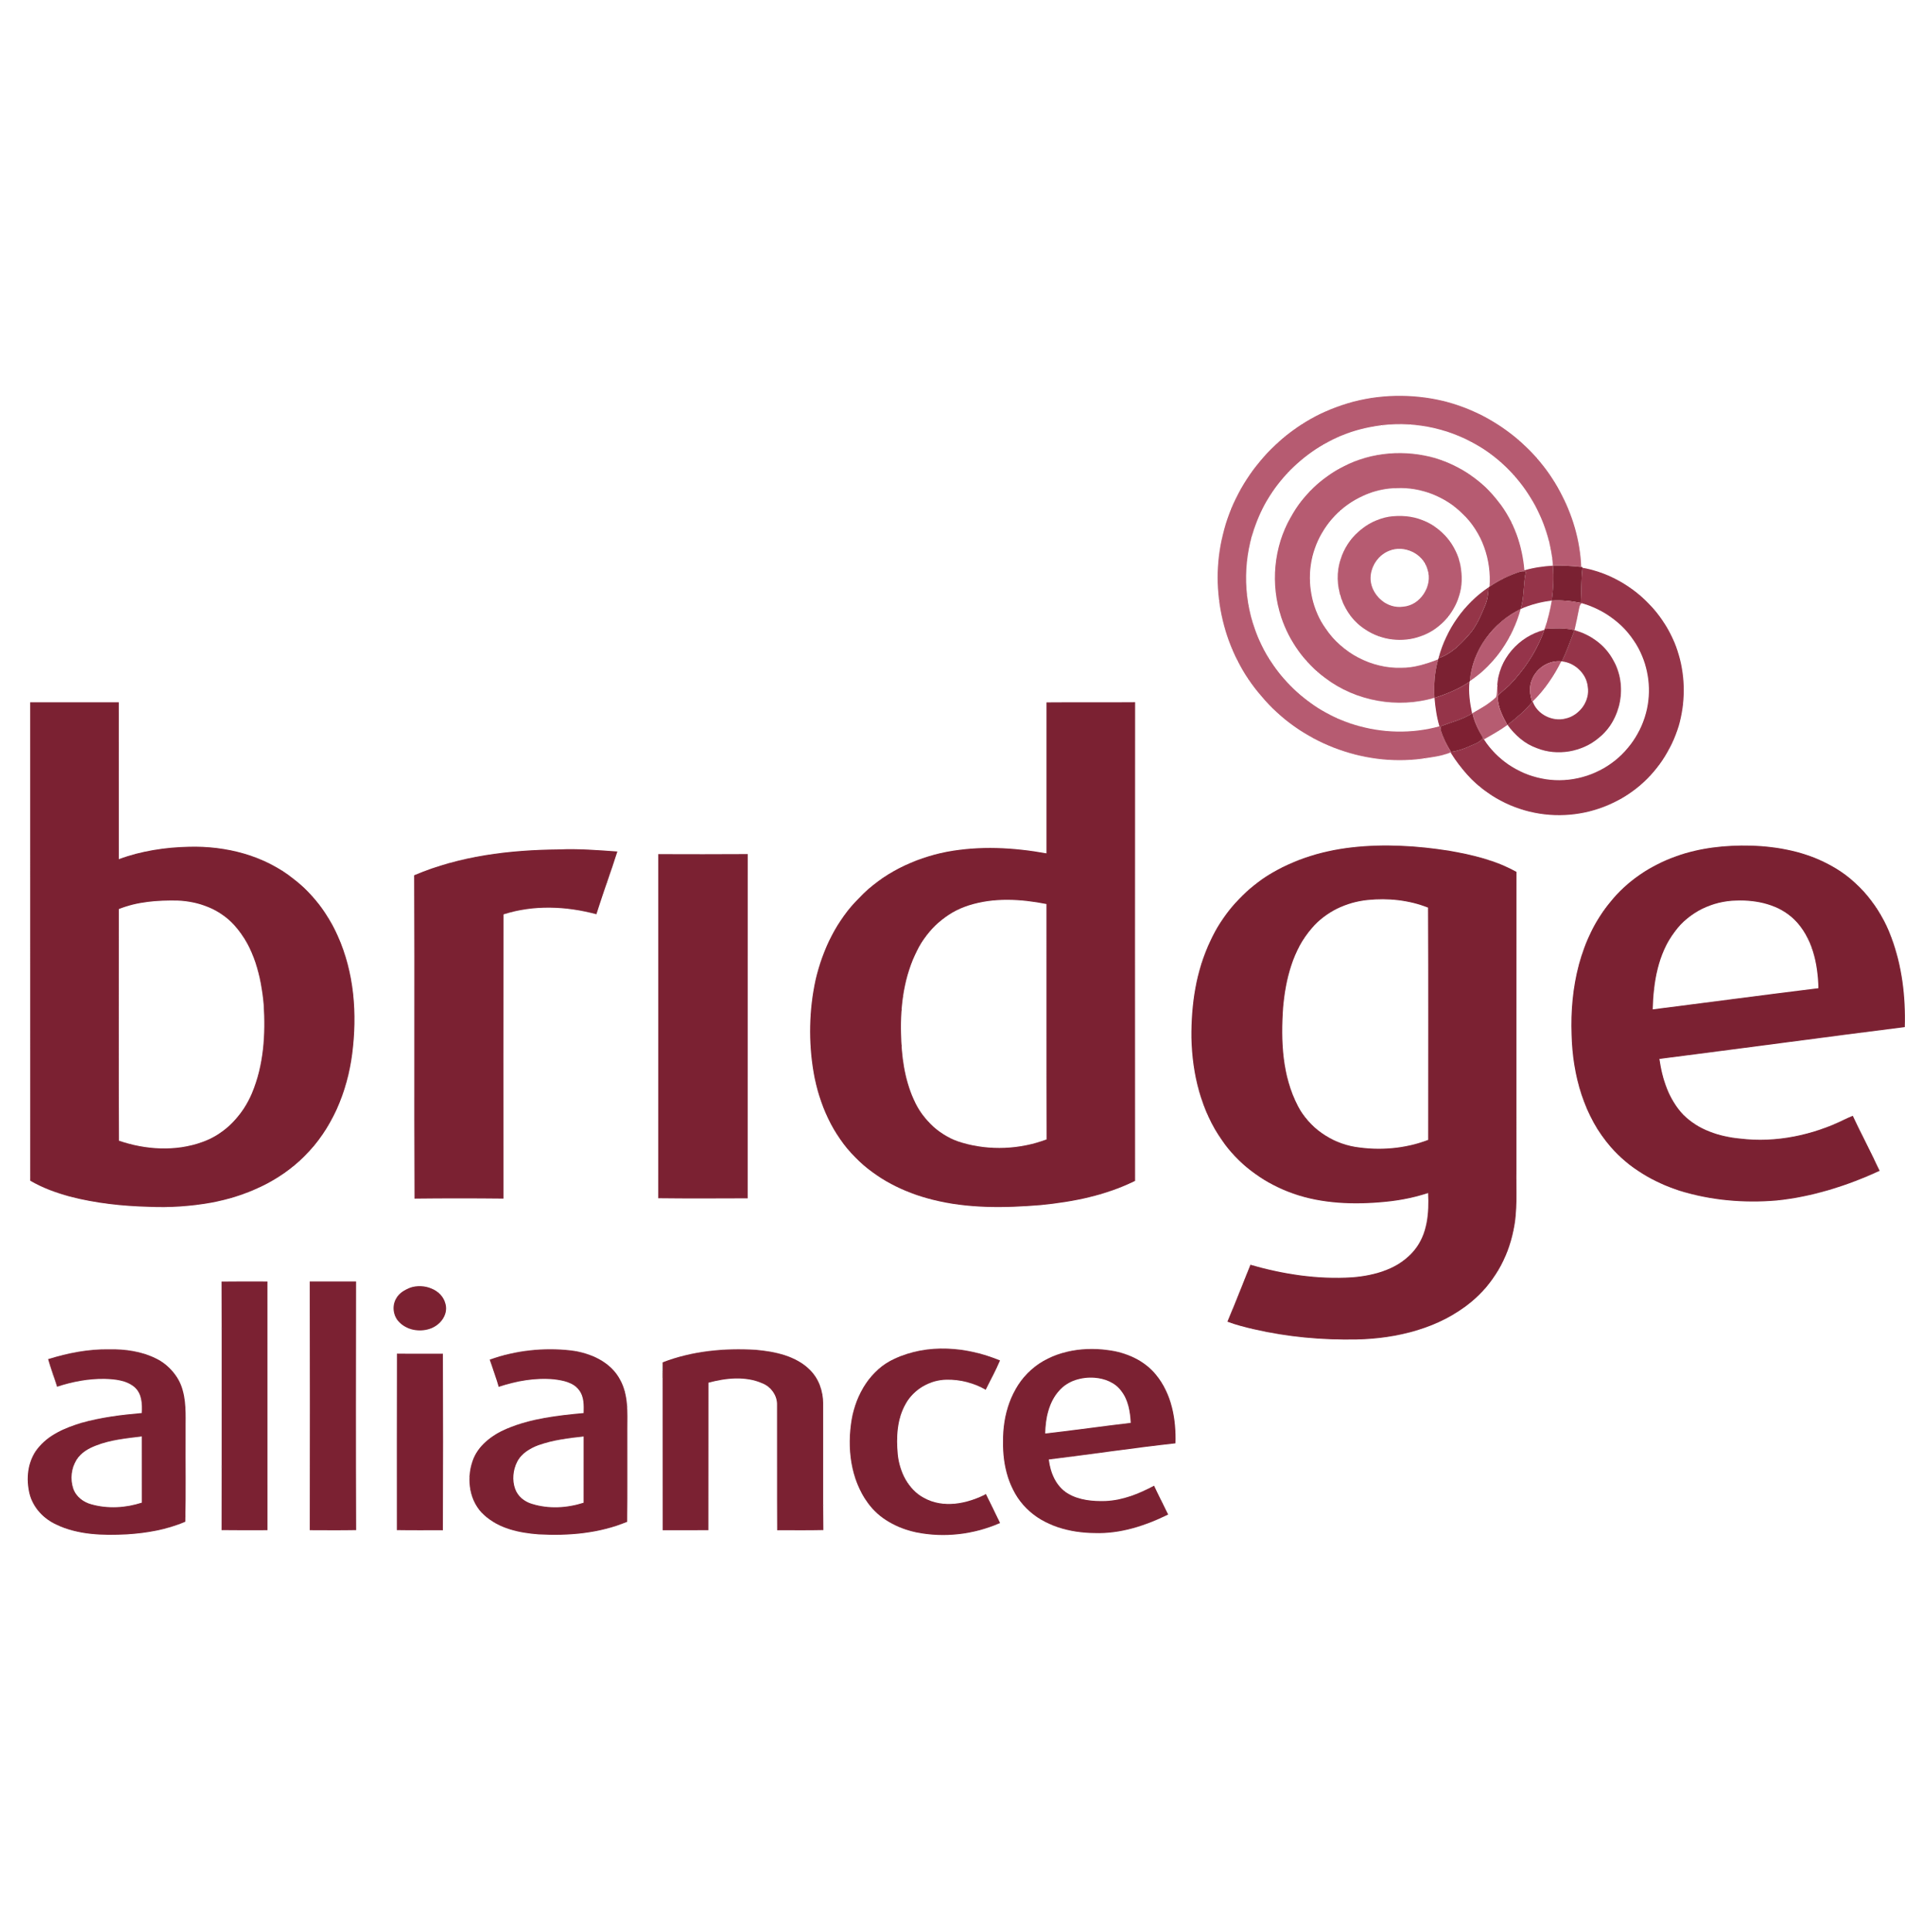 Bridge Alliance Logo Transparent Picture